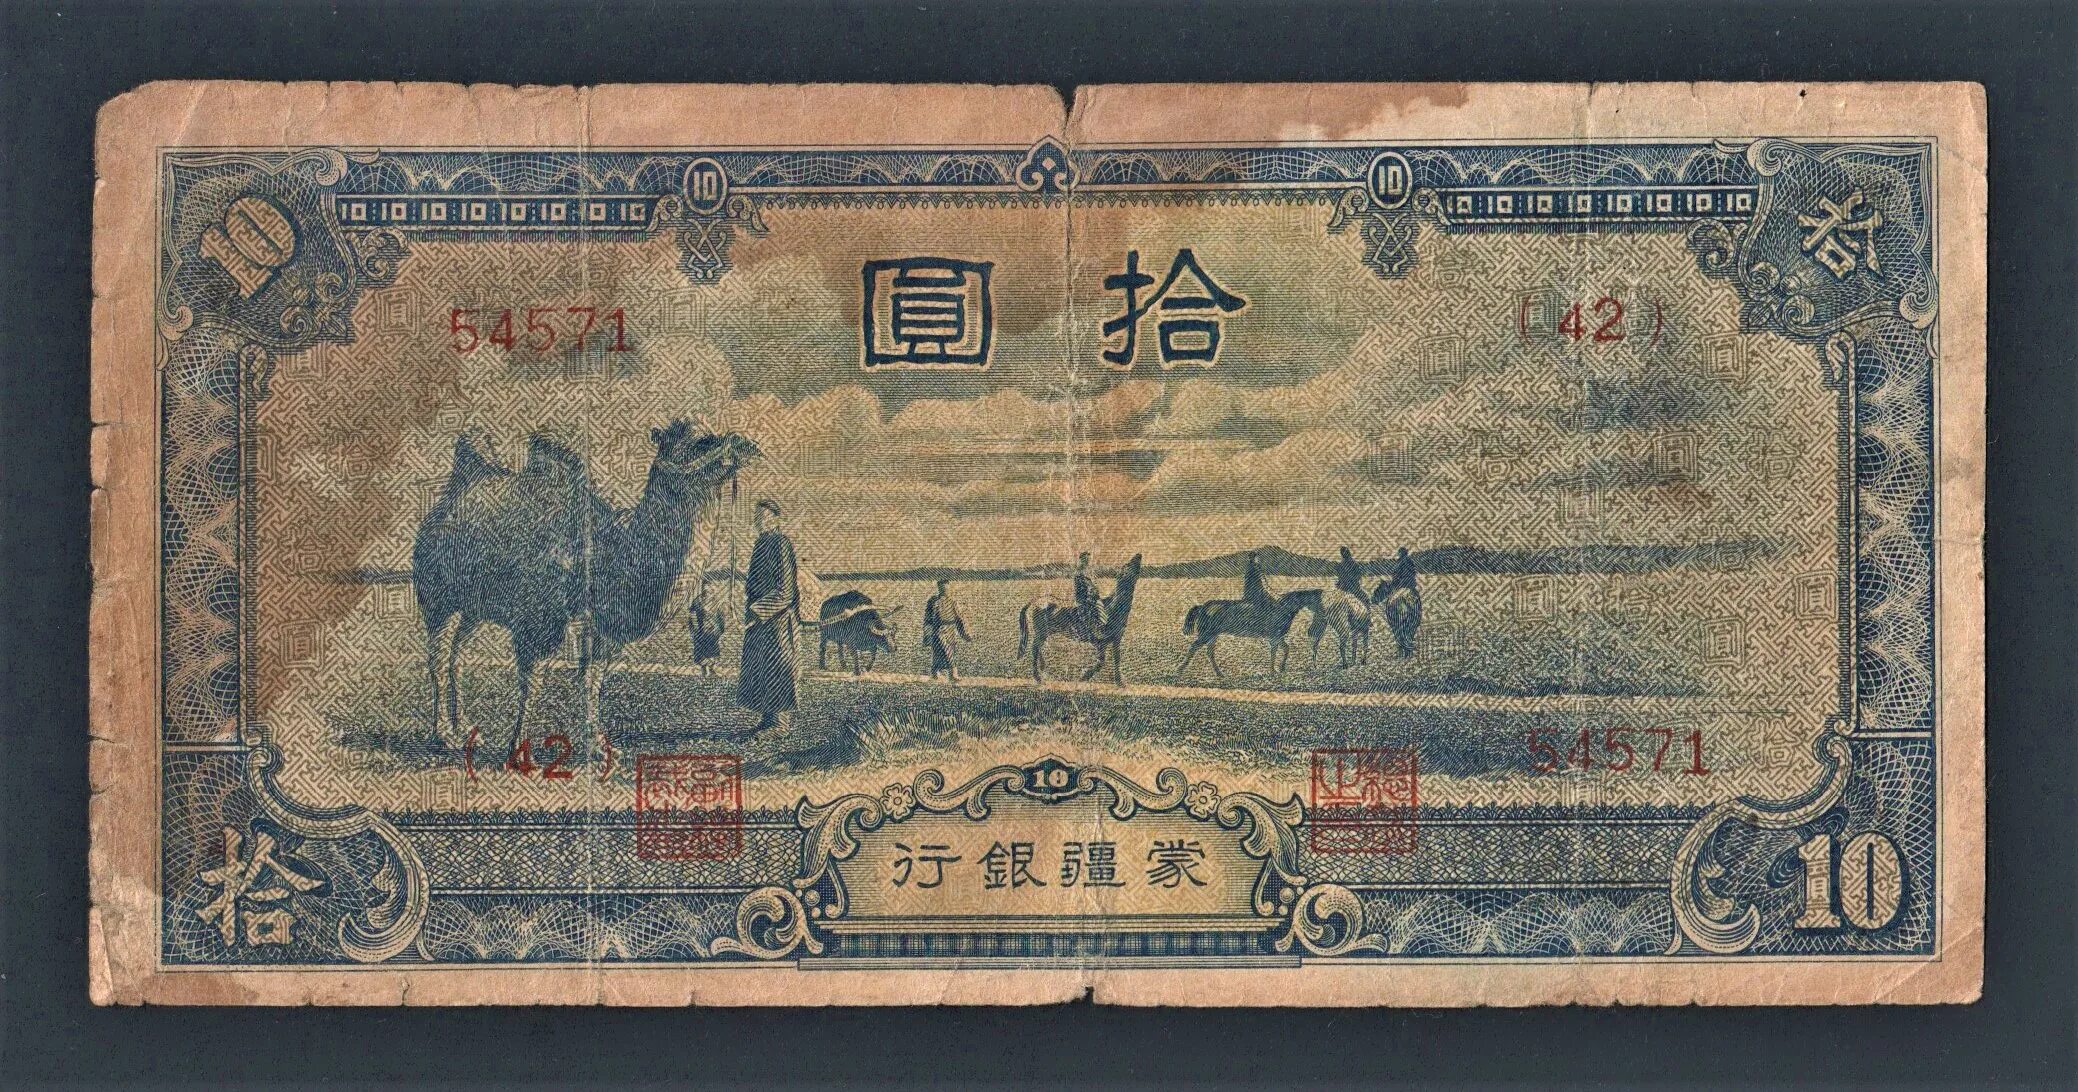 10 Юаней Маньчжурия банкнота. 1944 Юаней. Китай 1944. 10 Юаней 1938 Китай японская оккупация.